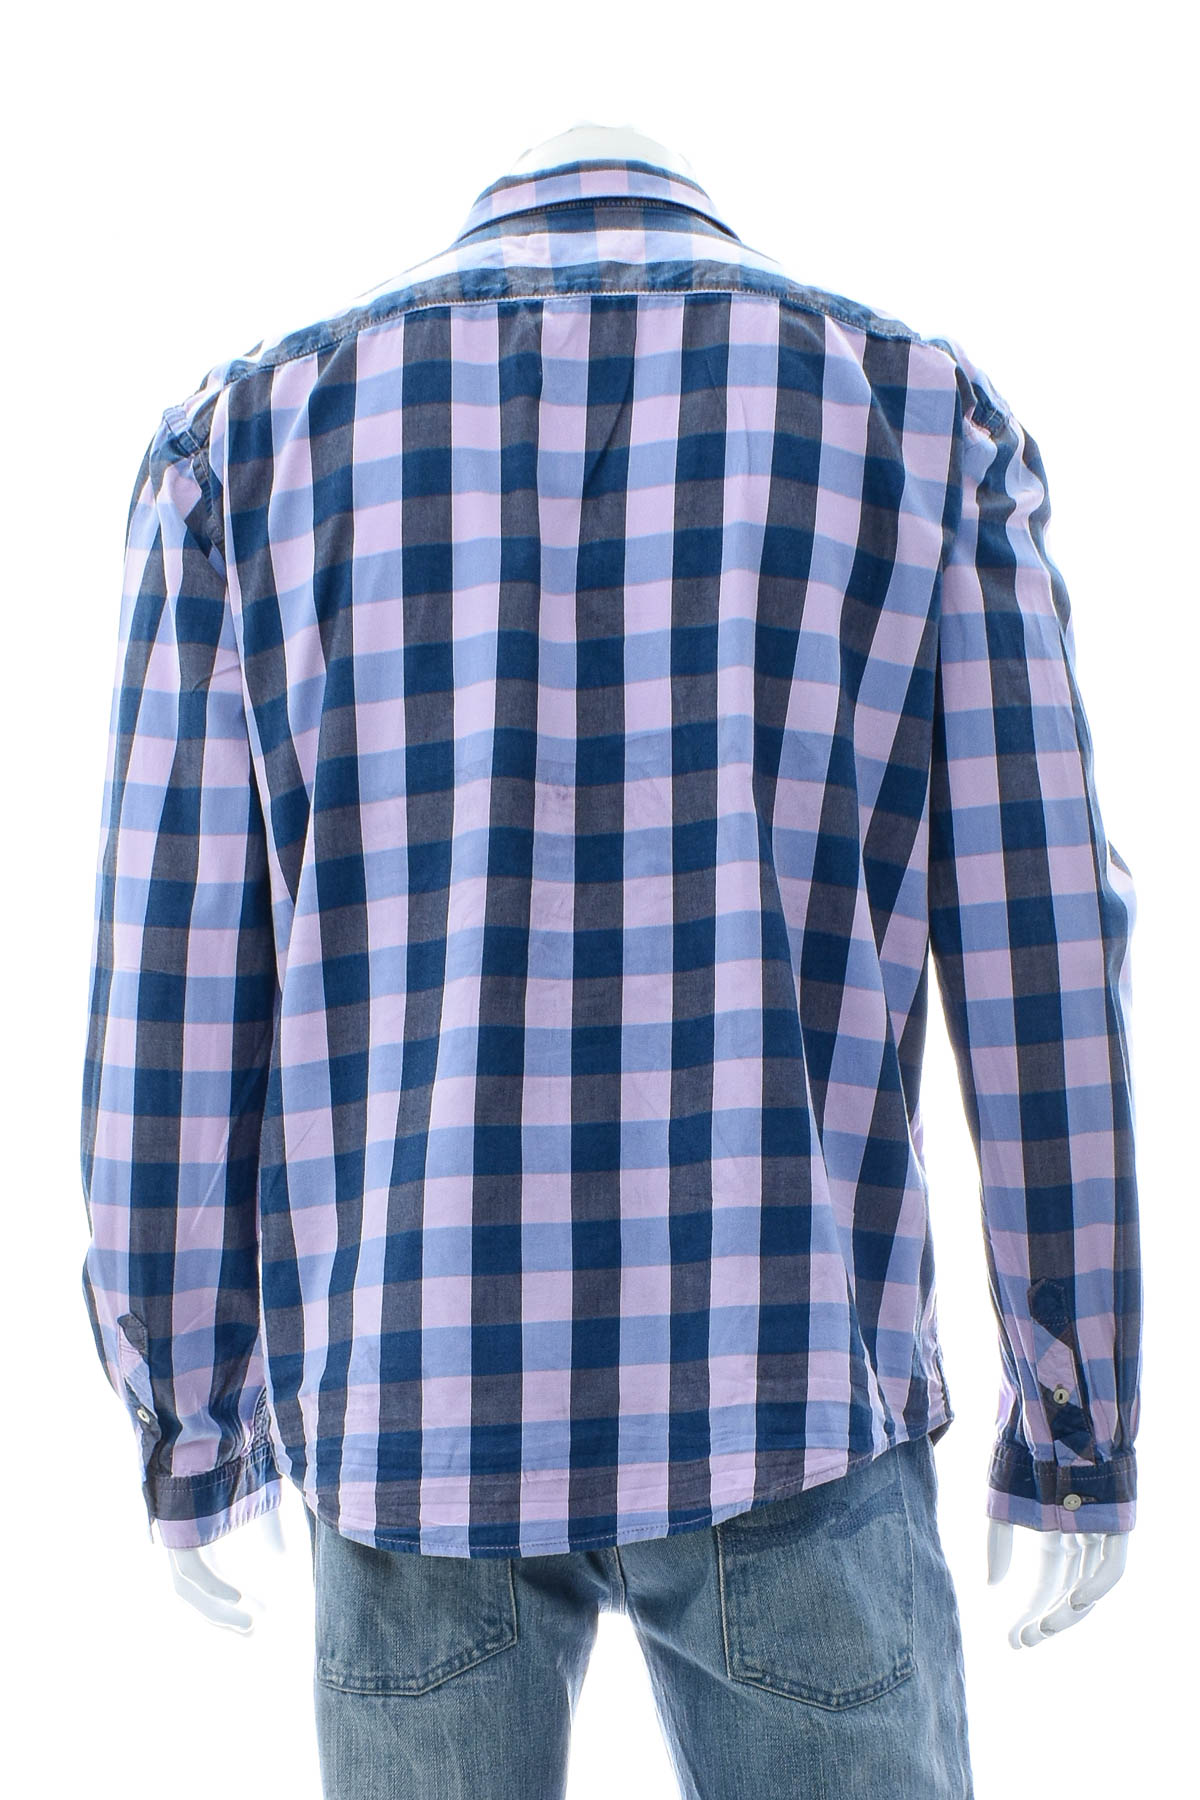 Ανδρικό πουκάμισο - TOM TAILOR Denim - 1